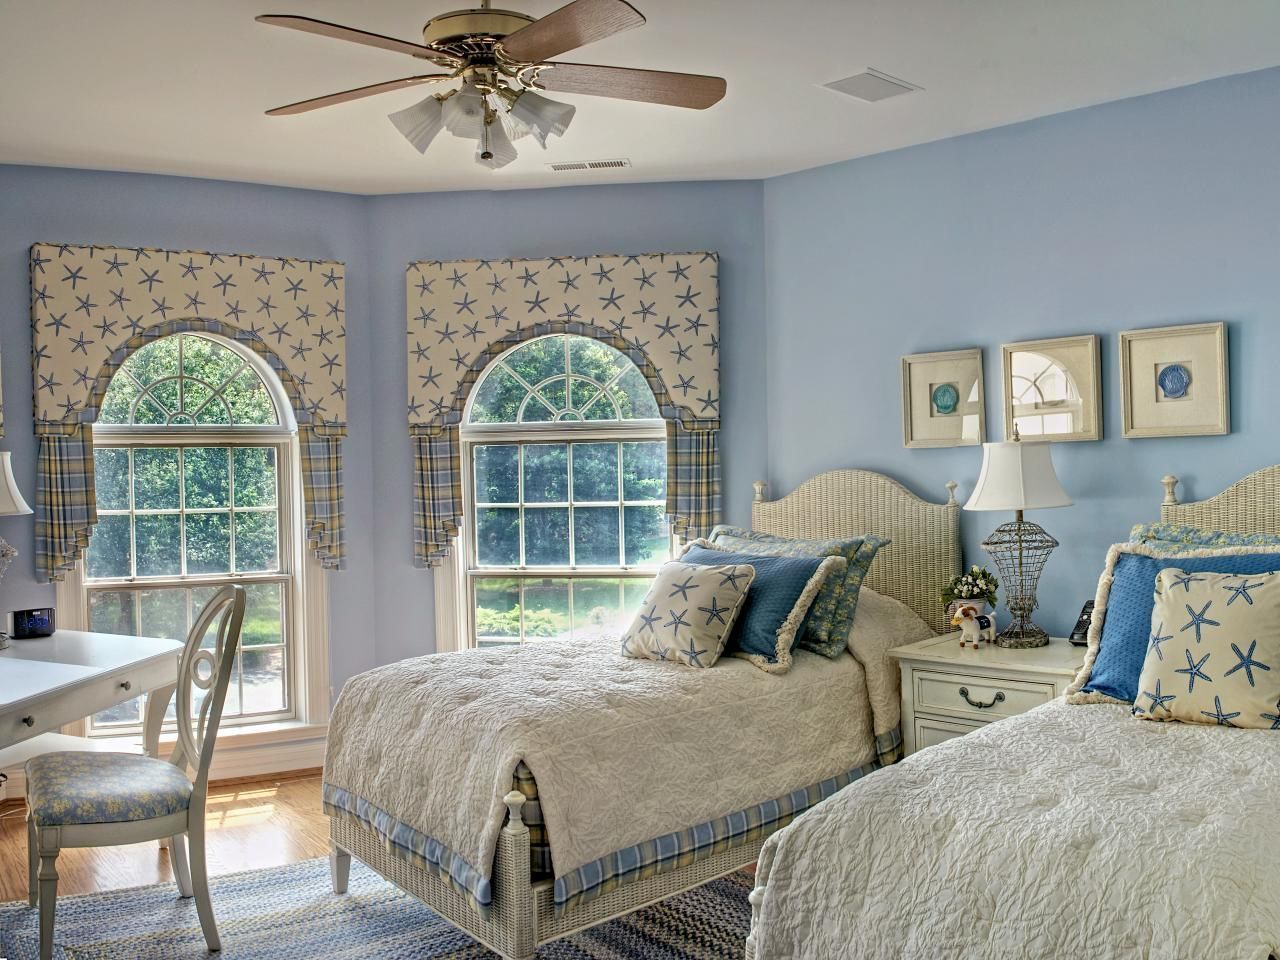 bedrooms ideas 2019 2019 coastal bedroom decorating ideas - neutral interior paint colors check GNGCROQ